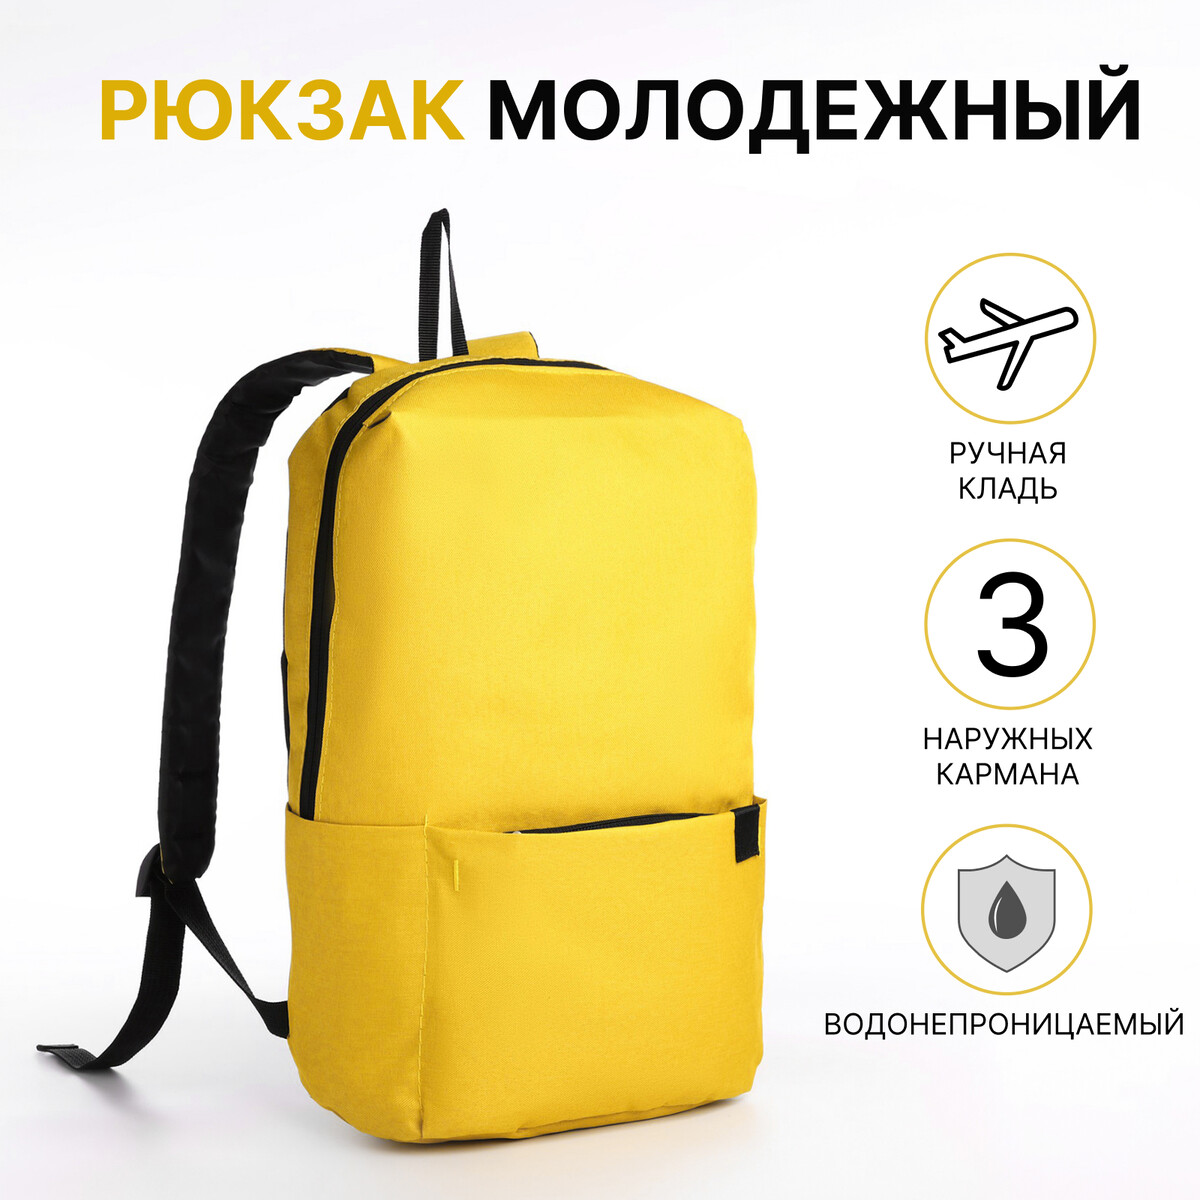 Рюкзак молодежный из текстиля на молнии, водонепроницаемый, наружный карман, цвет желтый